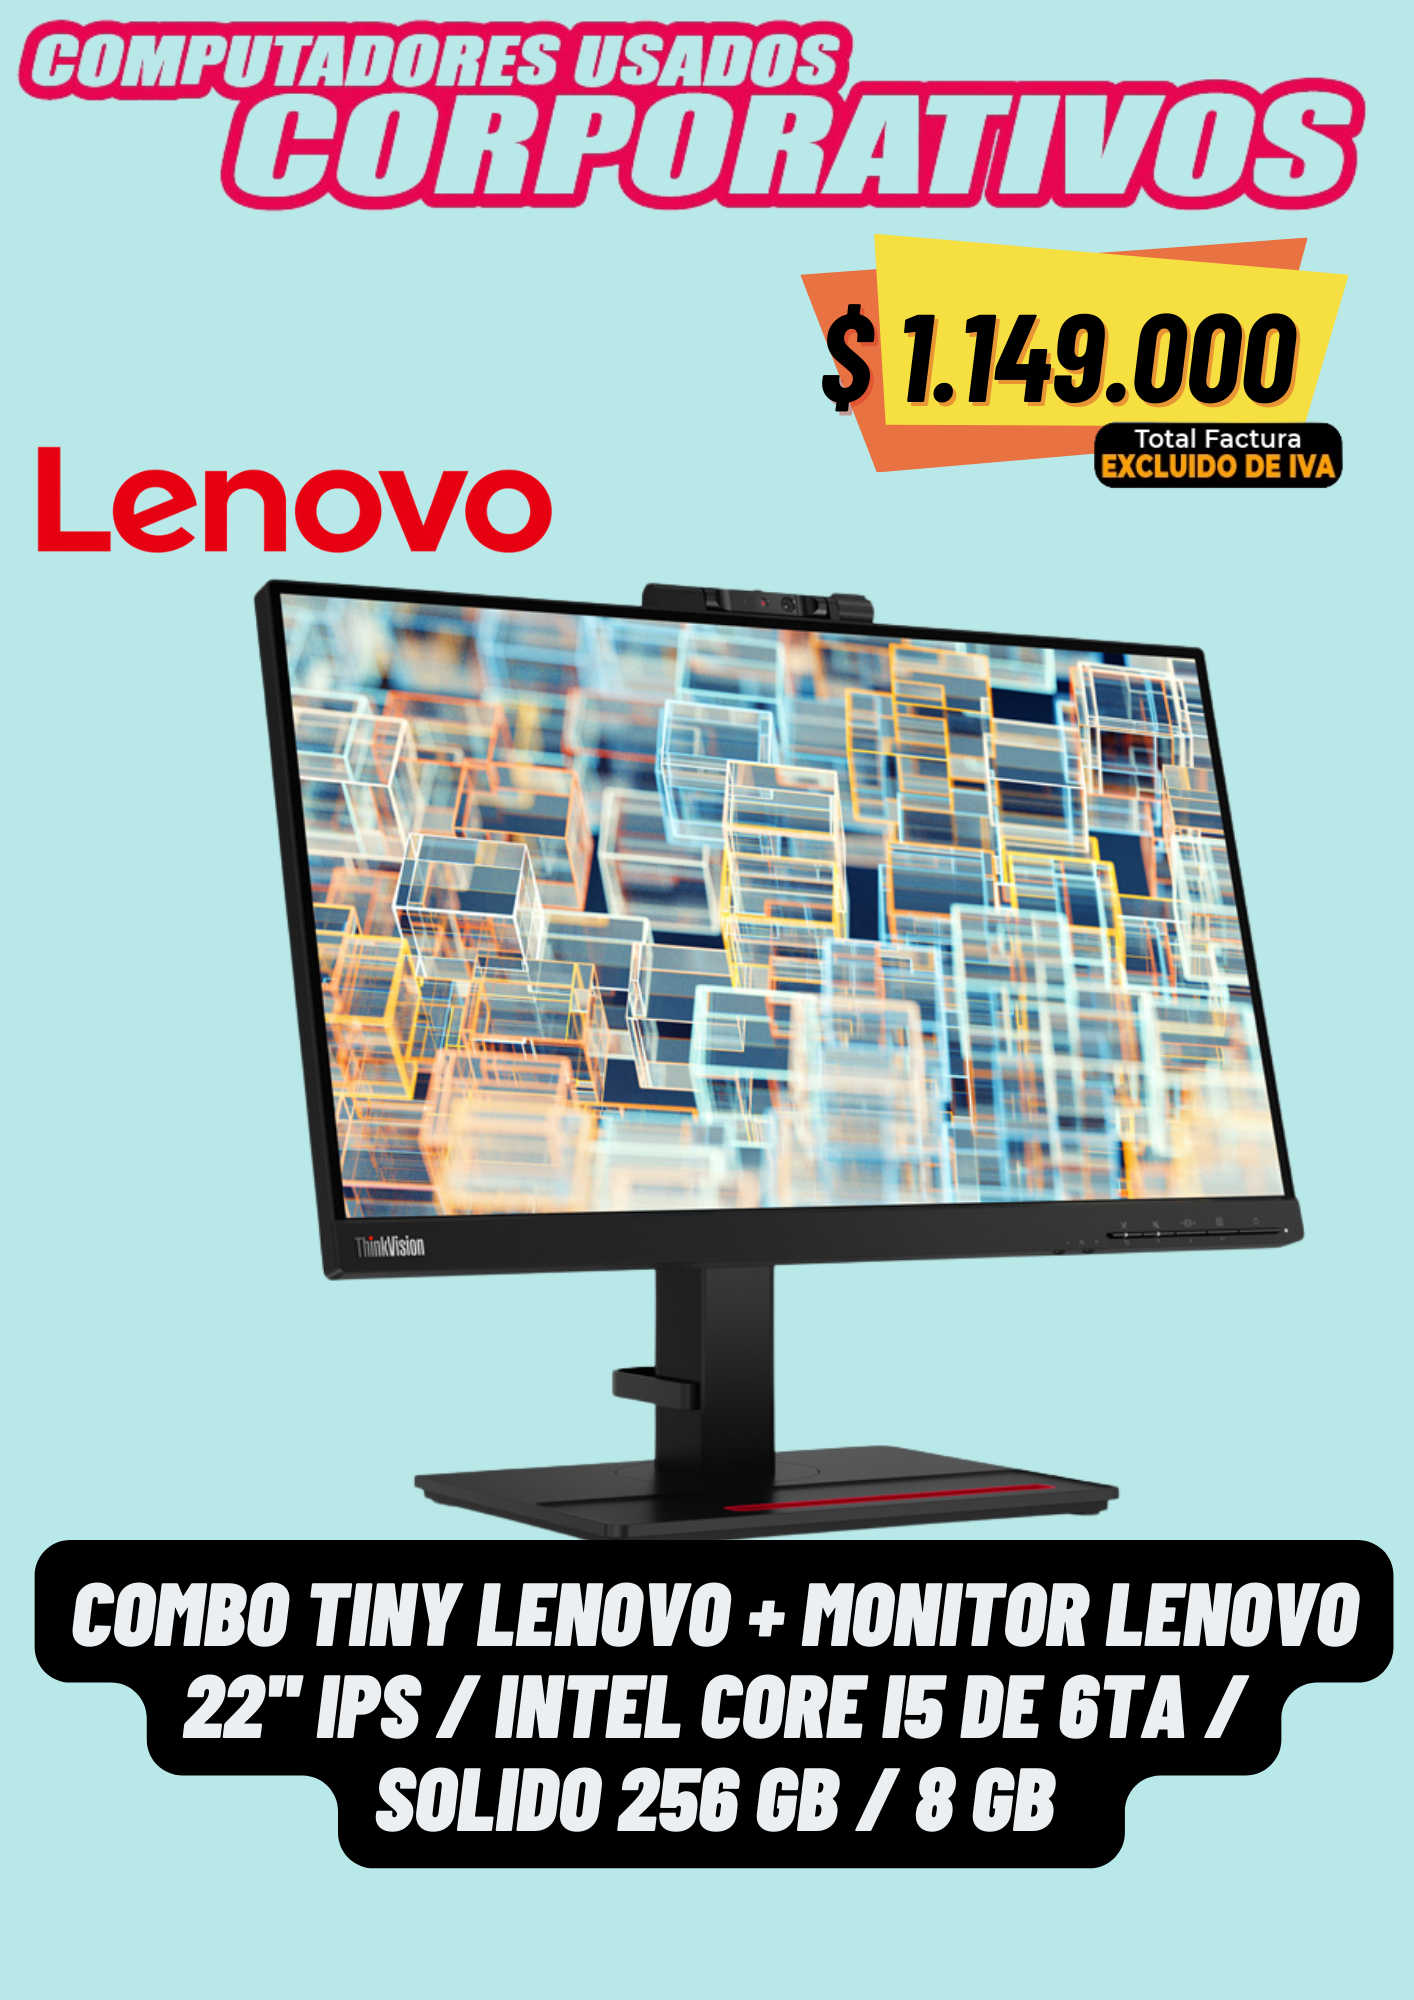 Lenovo IPS en combo Intel core I5